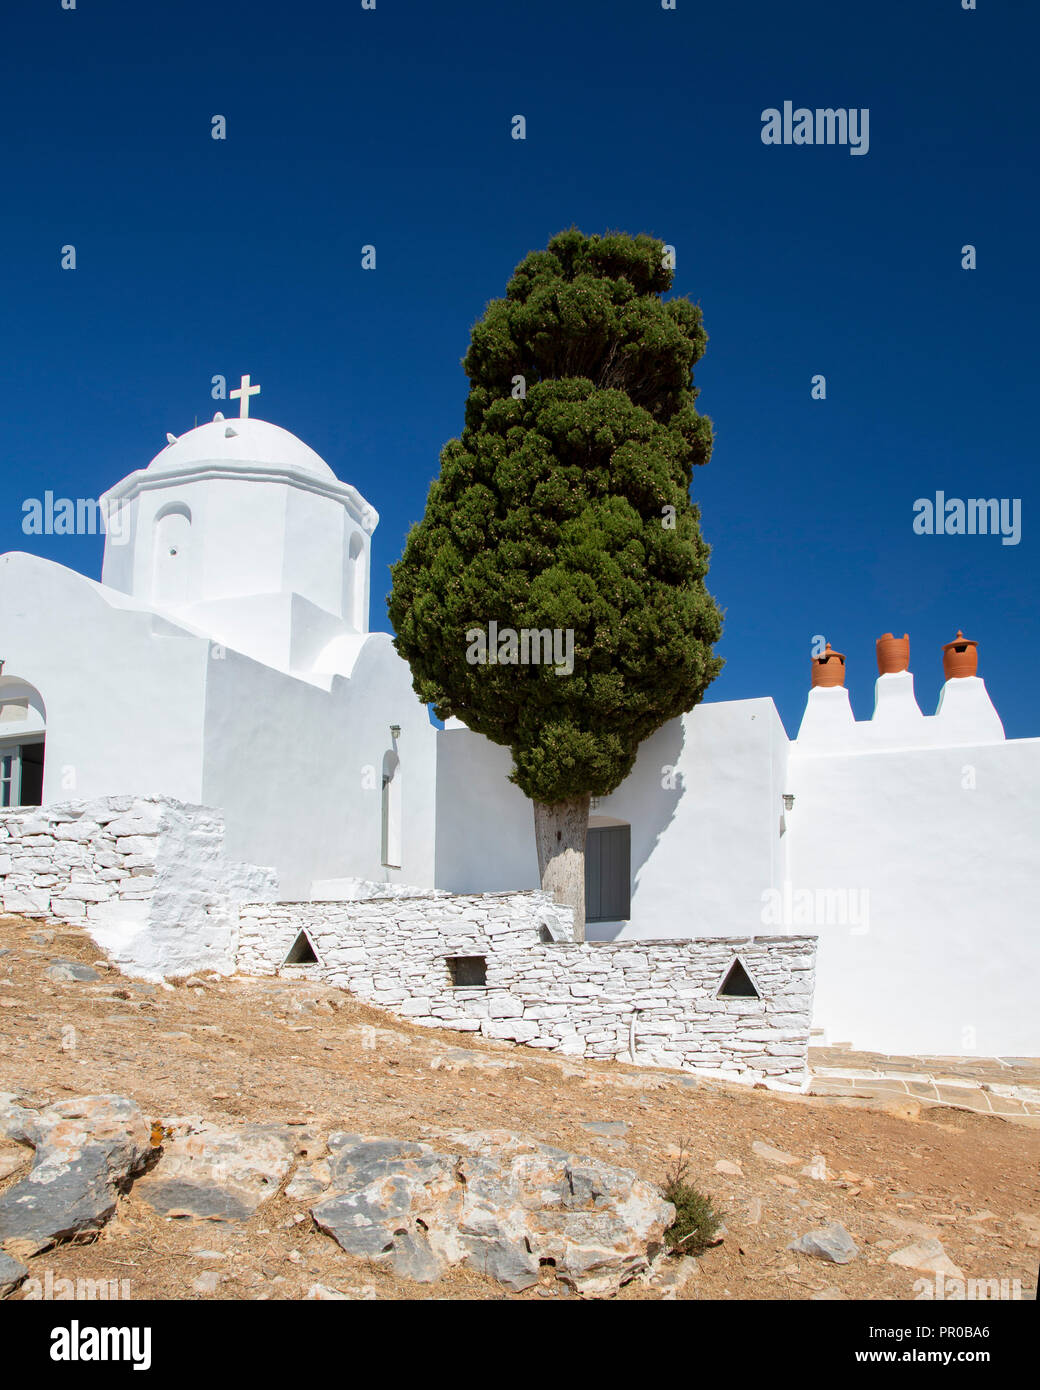 Agios Andreas chiesa ortodossa greca sull'isola greca di Sifnos Foto Stock